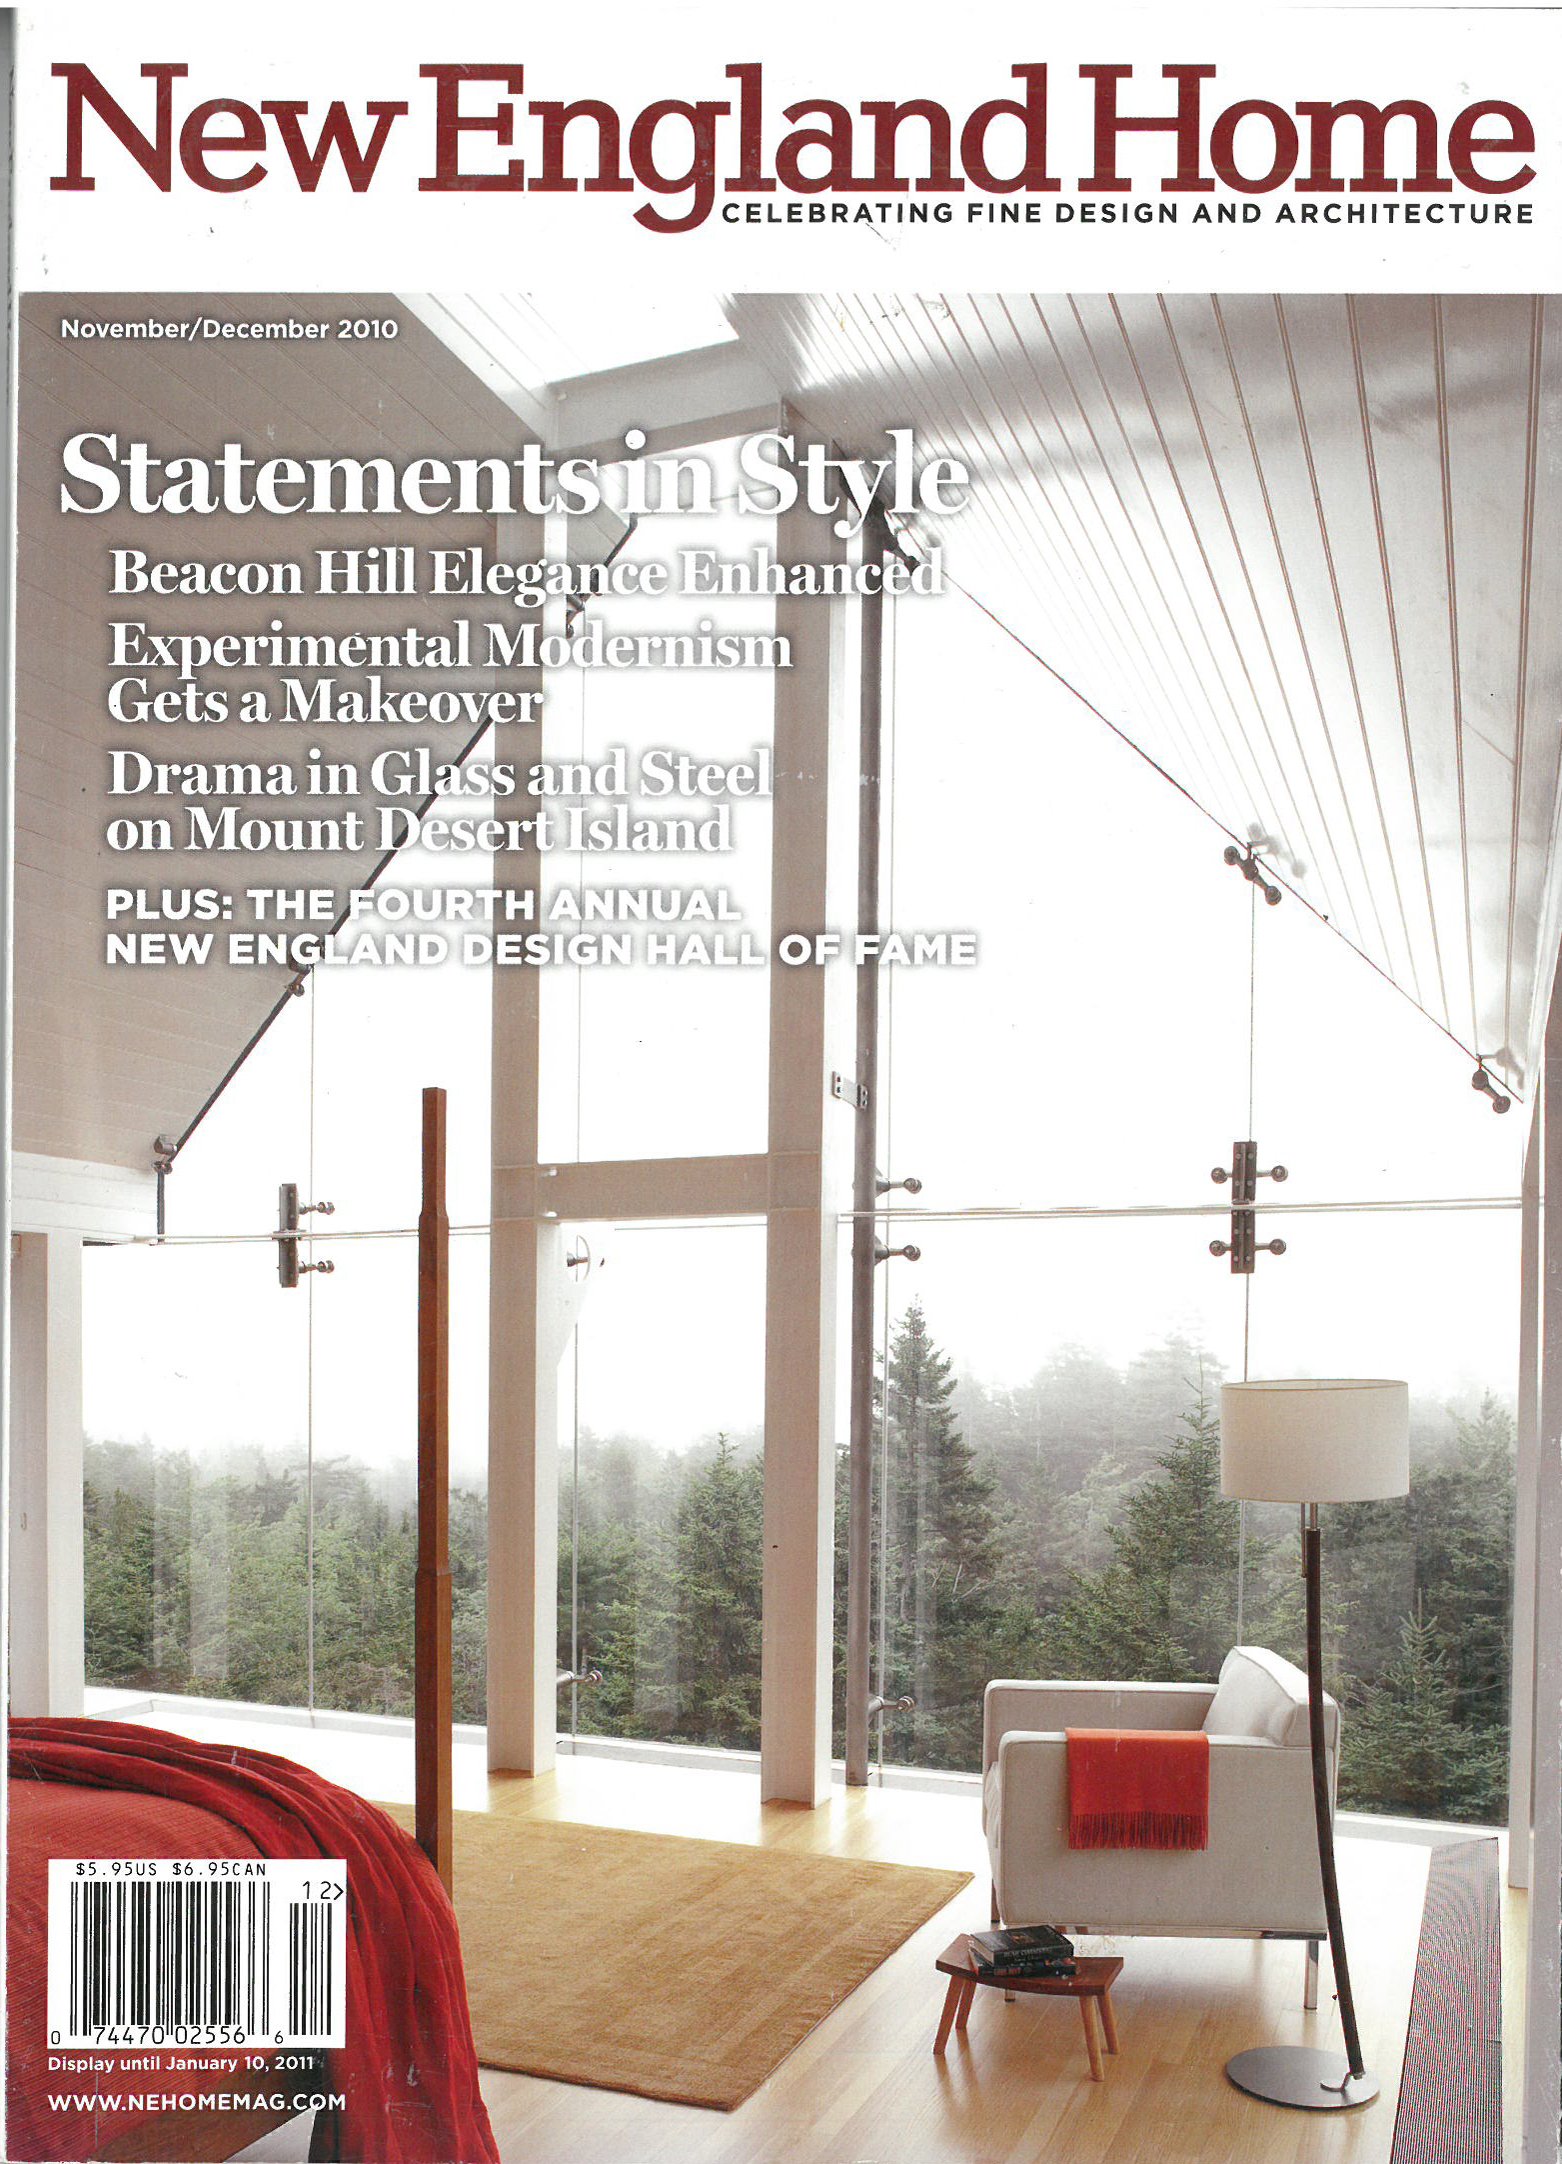 New England Home magazine cover, 2010